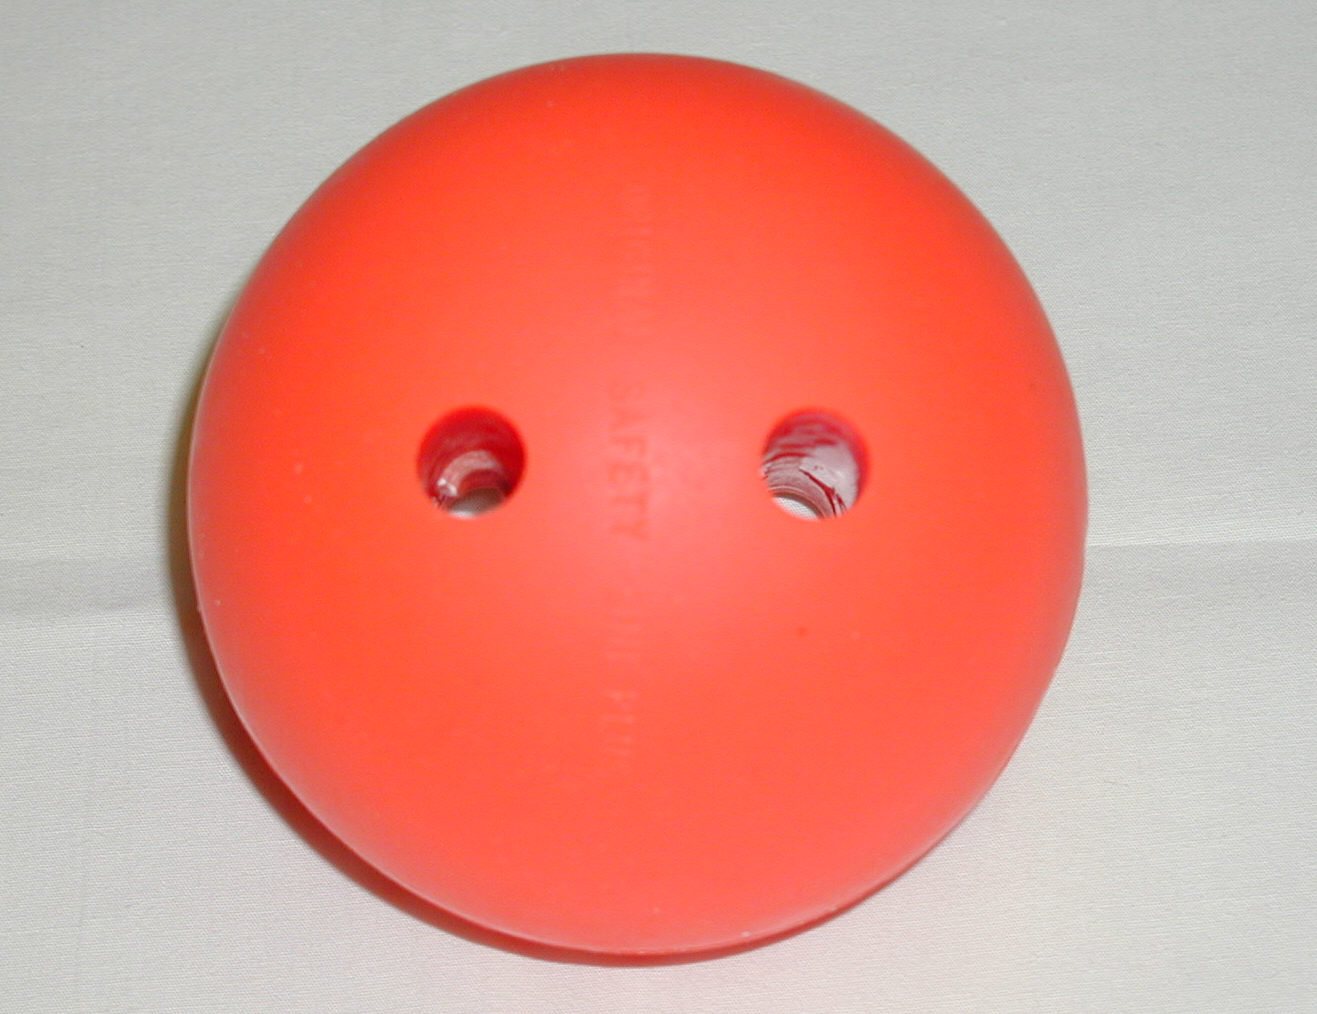 Heaving/Rescue Ball has many uses.